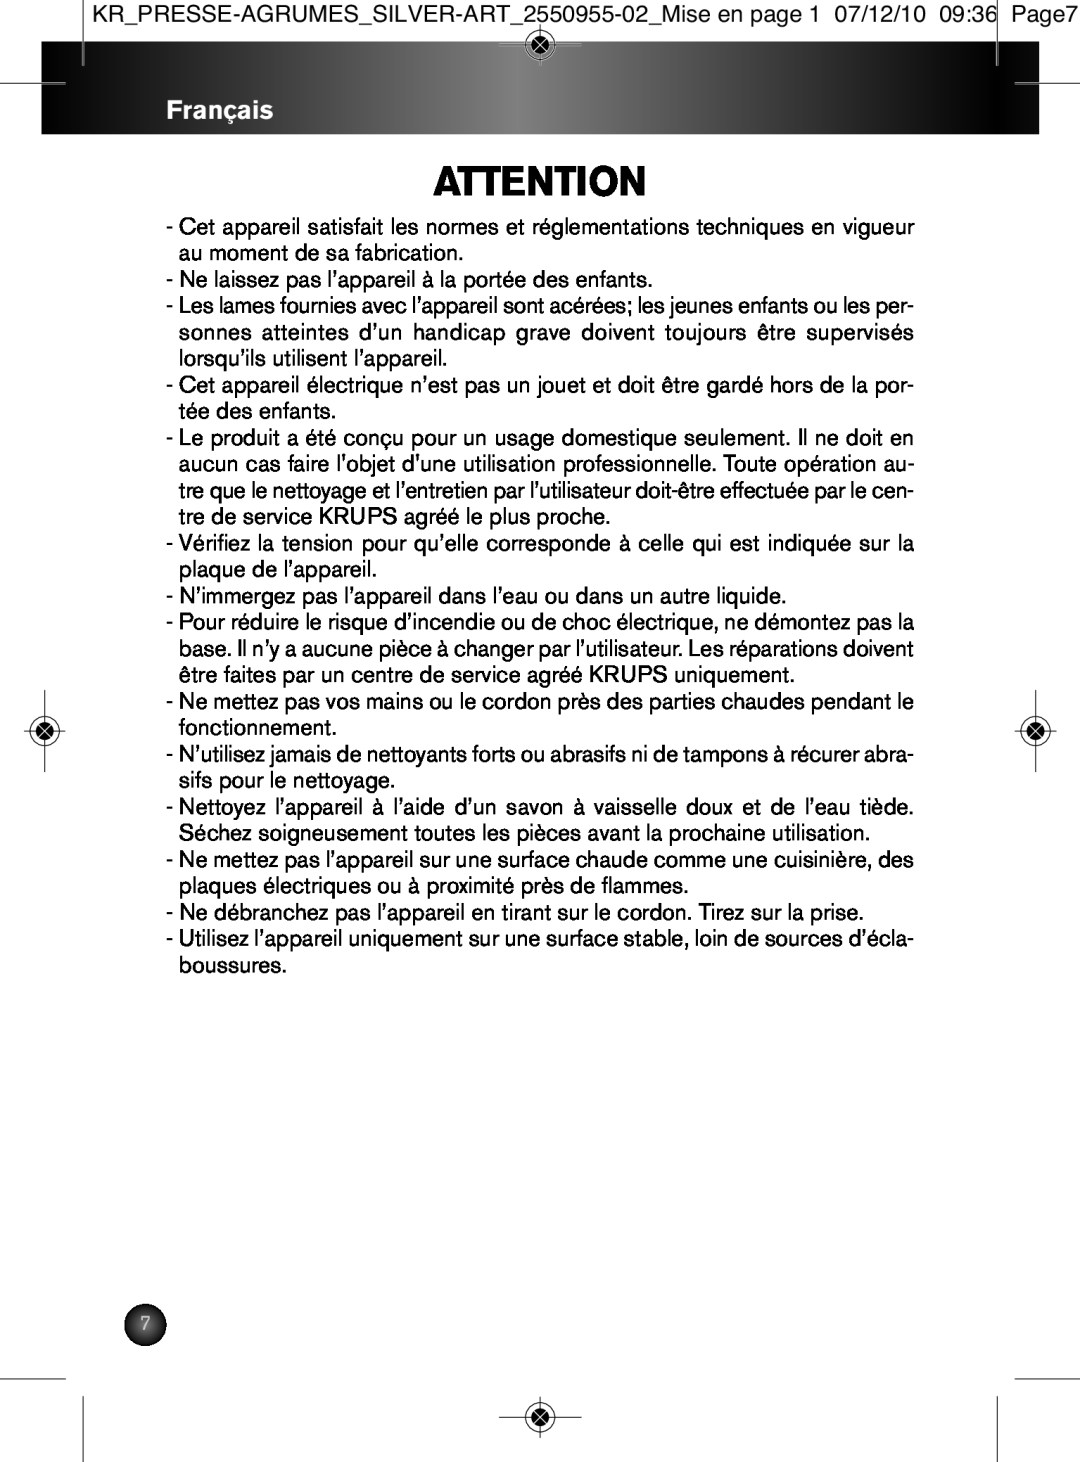 Krups 2550955-02 manual Français, Ne laissez pas l’appareil à la portée des enfants 